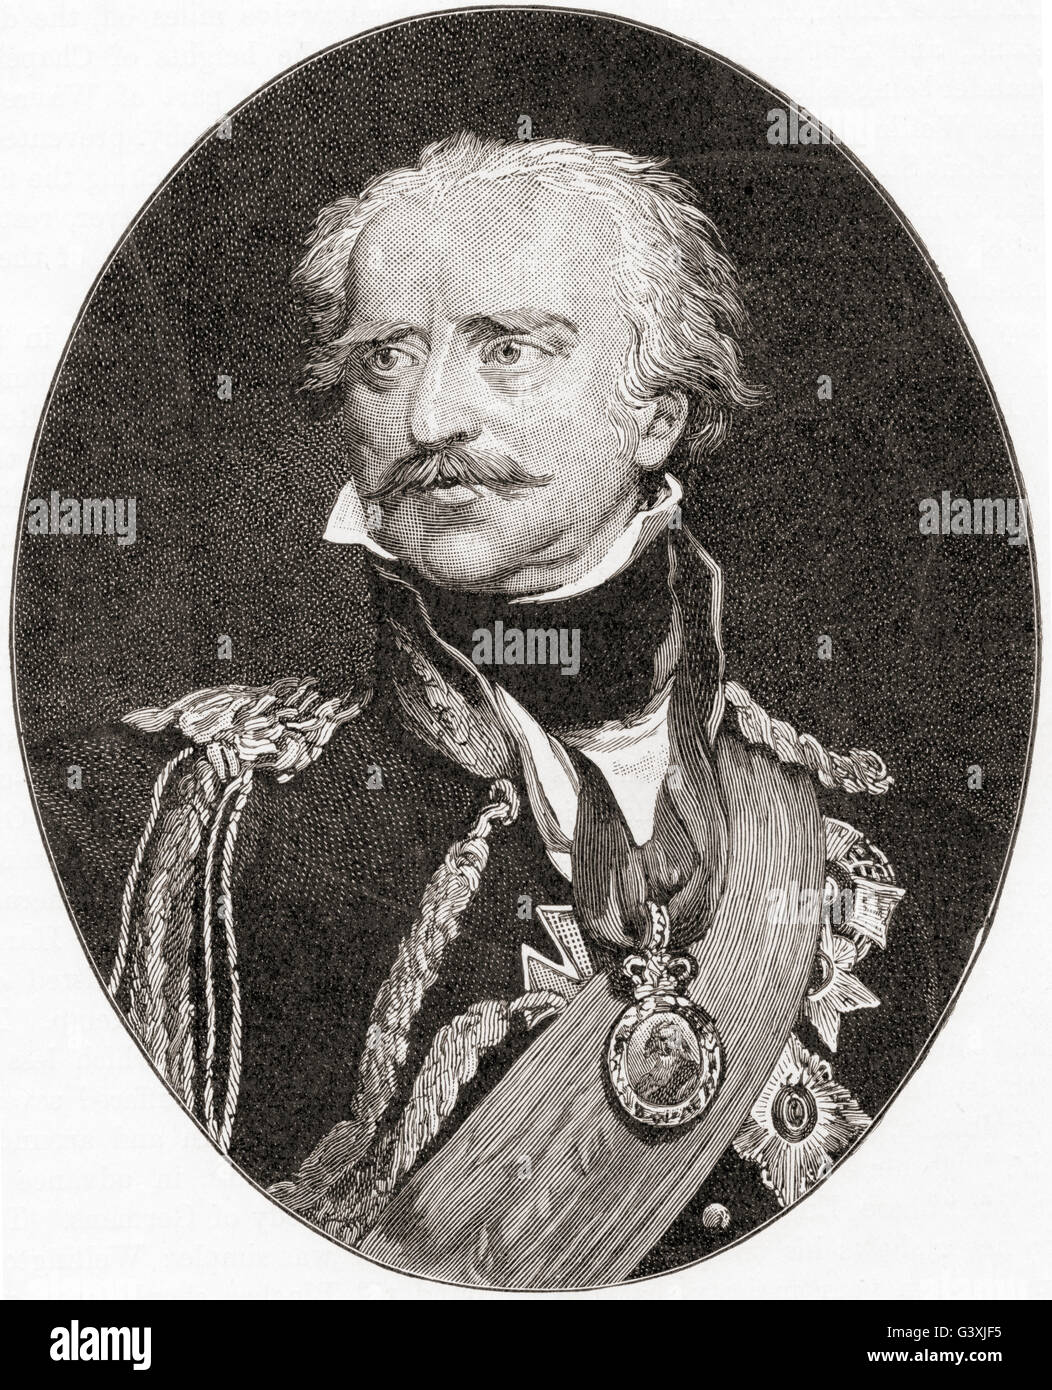 Gebhard Leberecht von Blücher, Fürst von Wahlstatt, 1742 – 1819. Prussian field marshal. Stock Photo